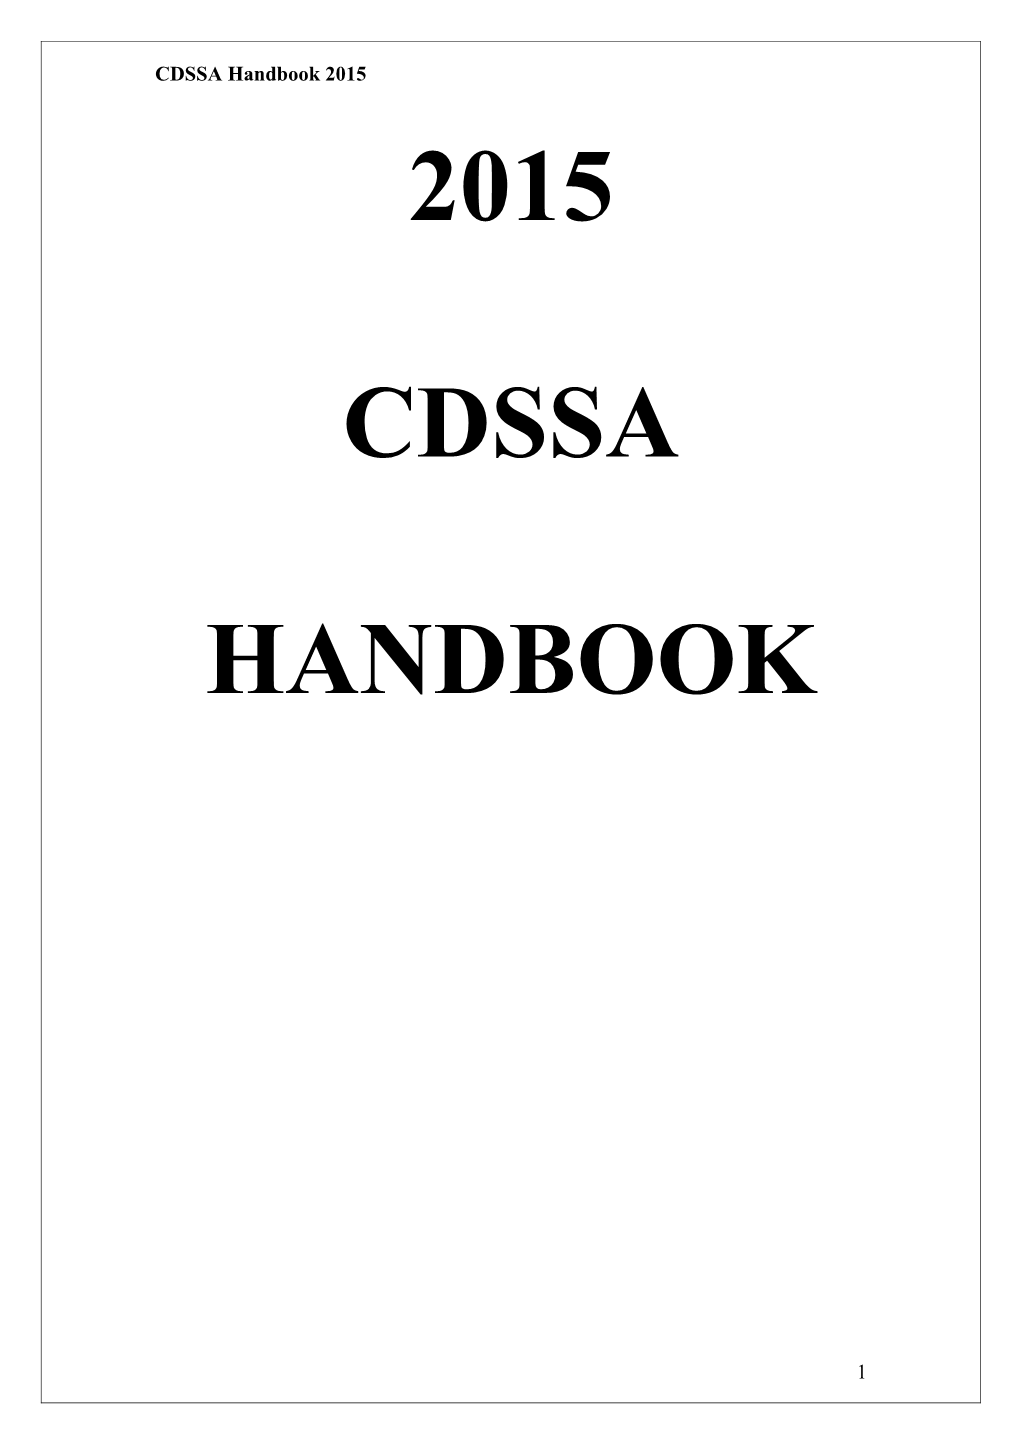 CDSSA Handbook 2015